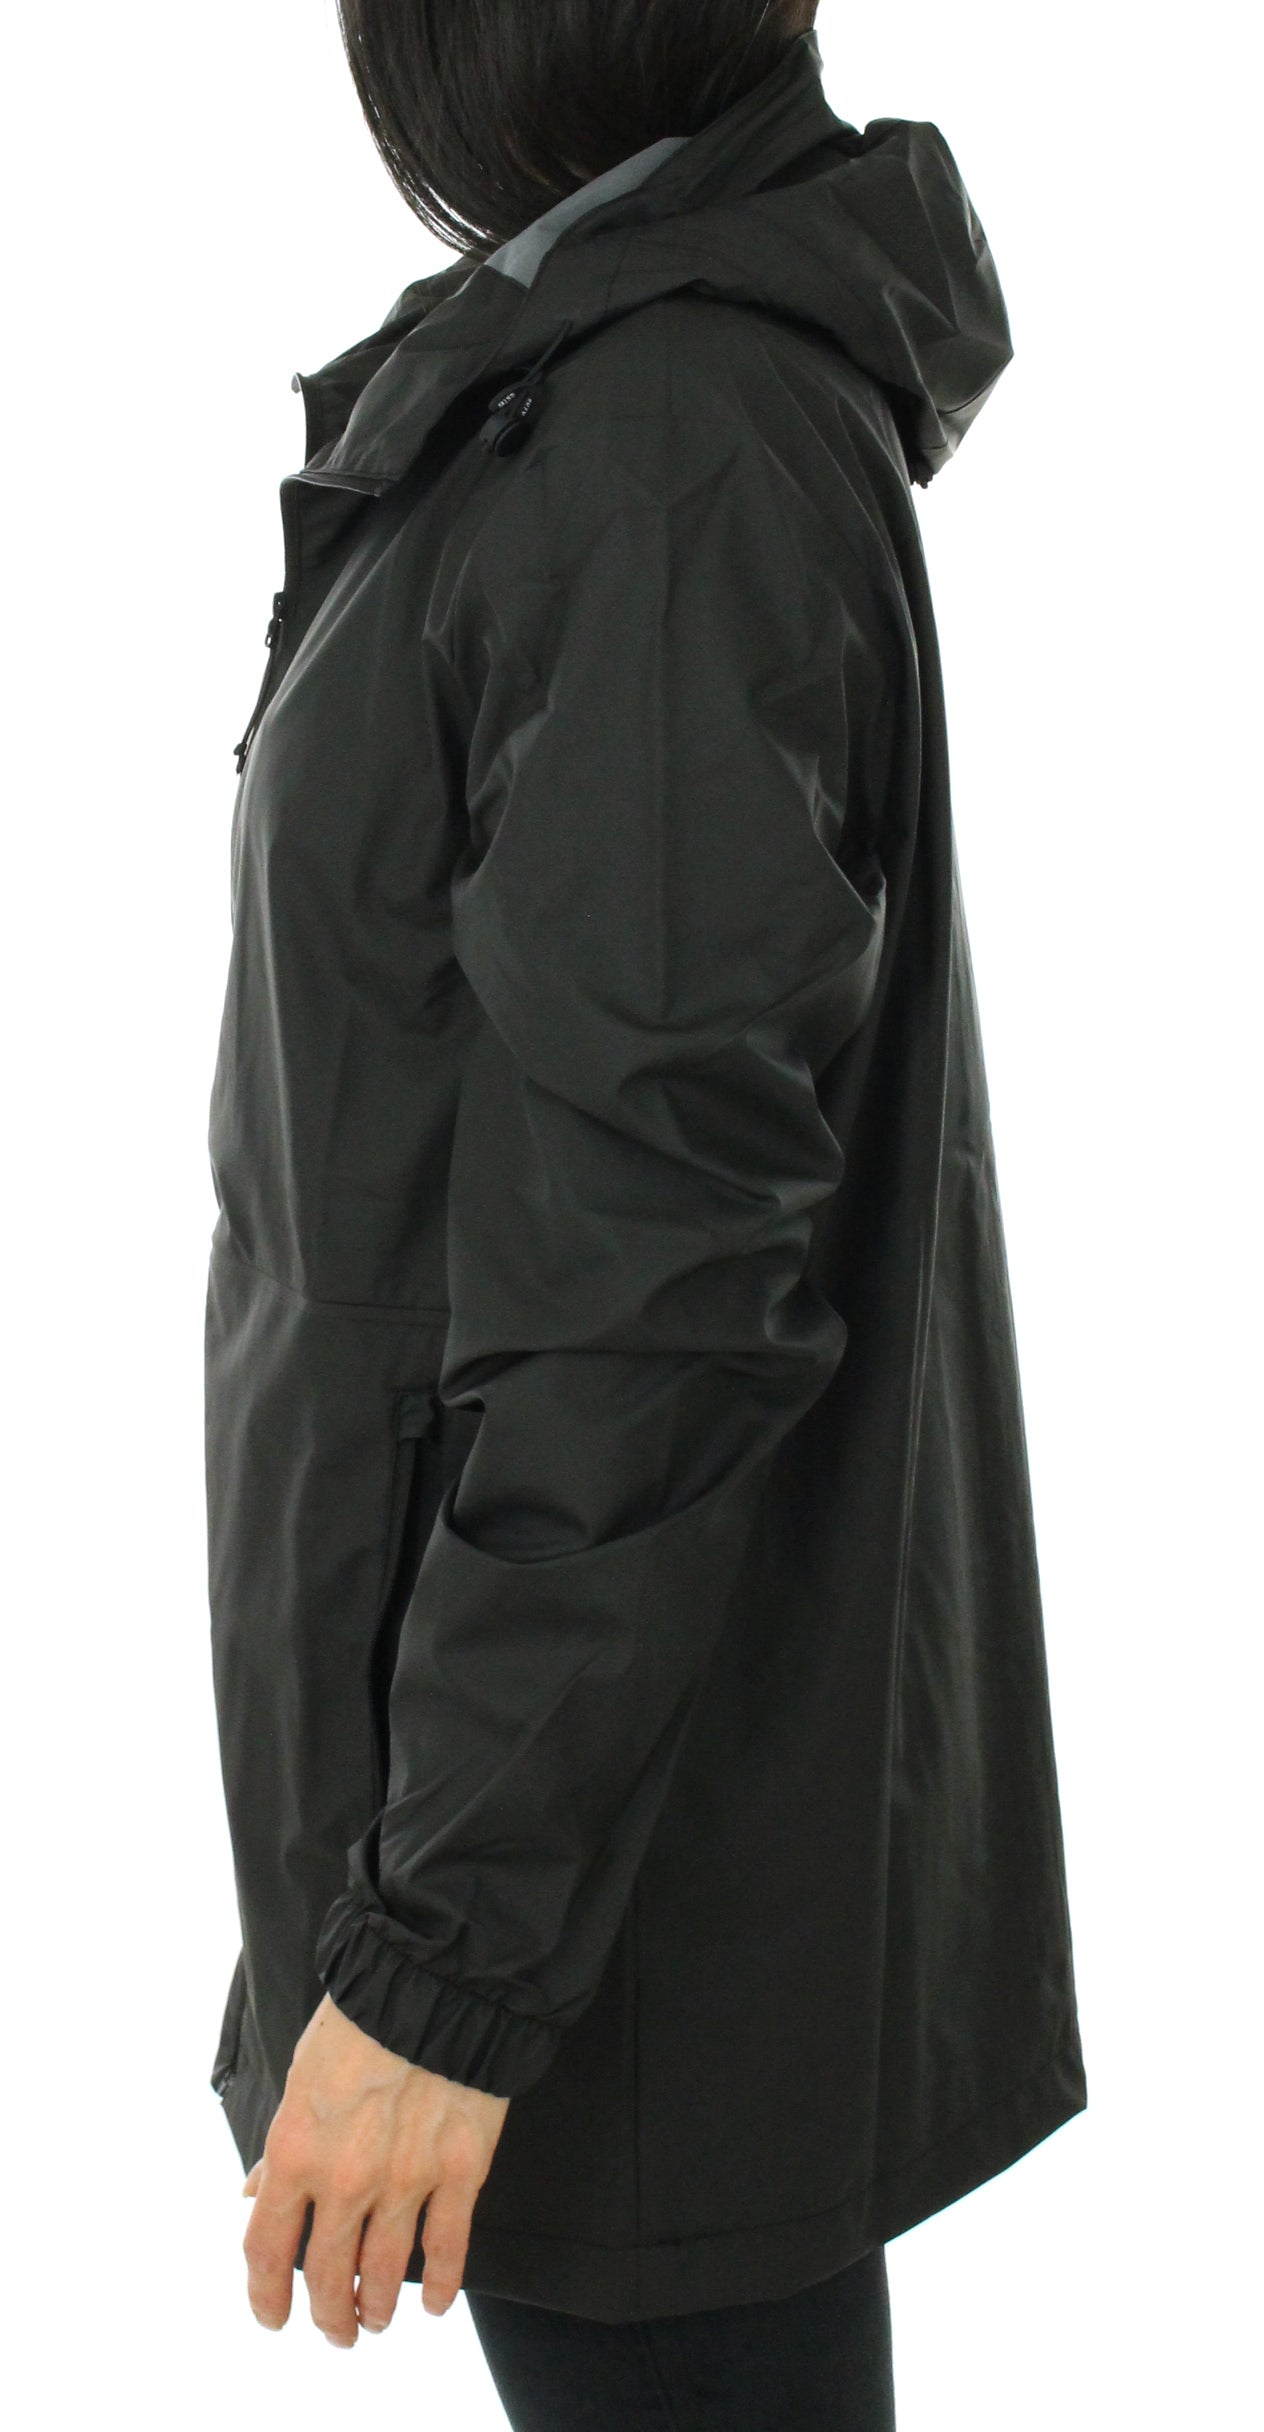 Black Unisex 1816 Waterproof Jacket